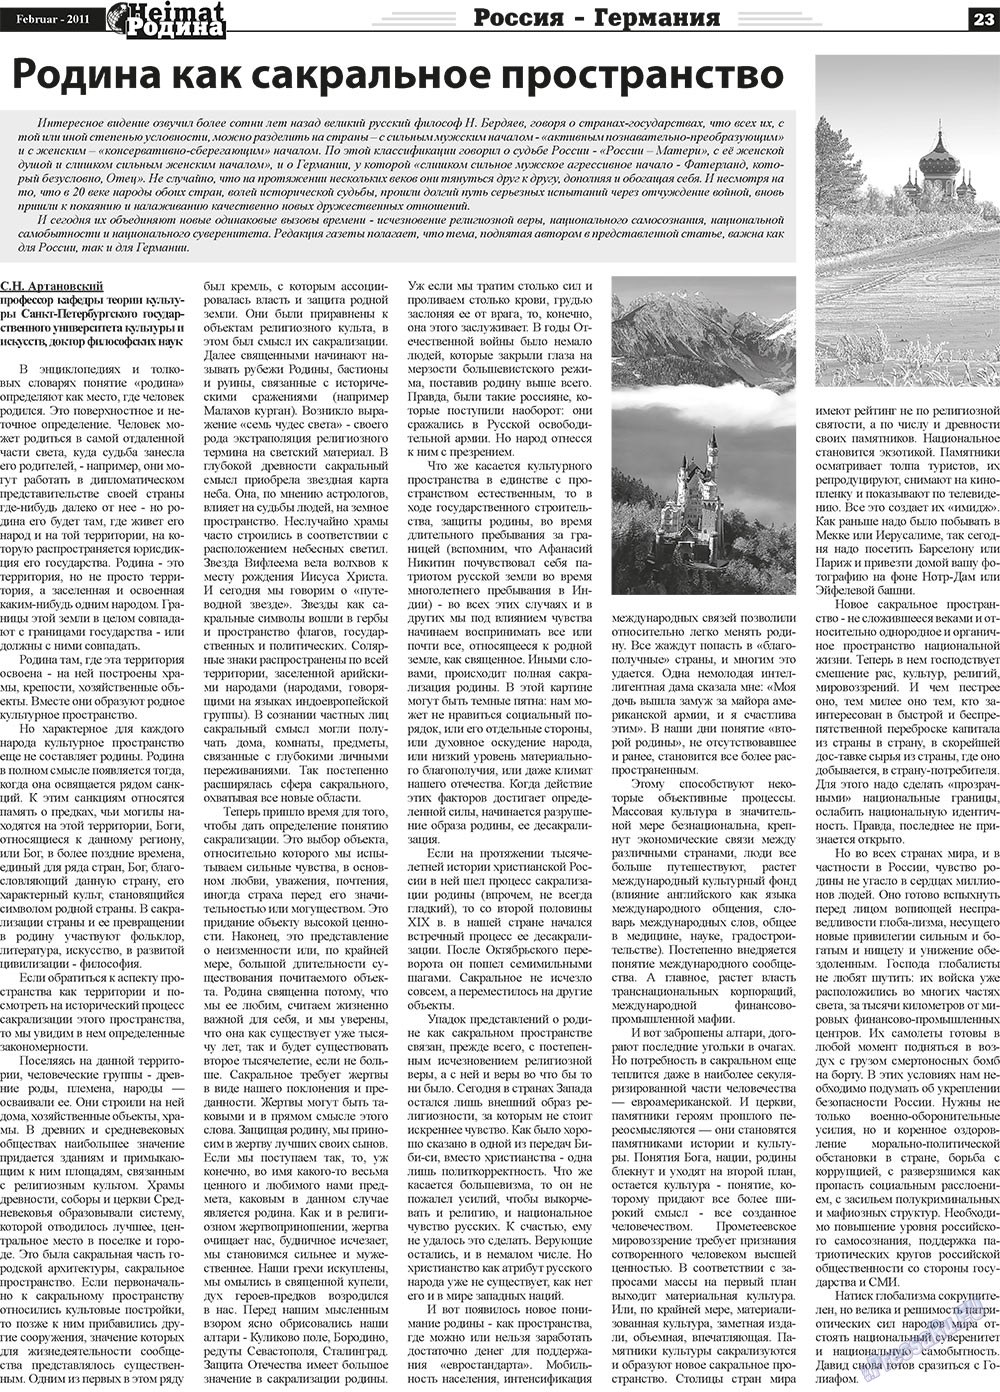 Heimat-Родина (газета). 2011 год, номер 2, стр. 23